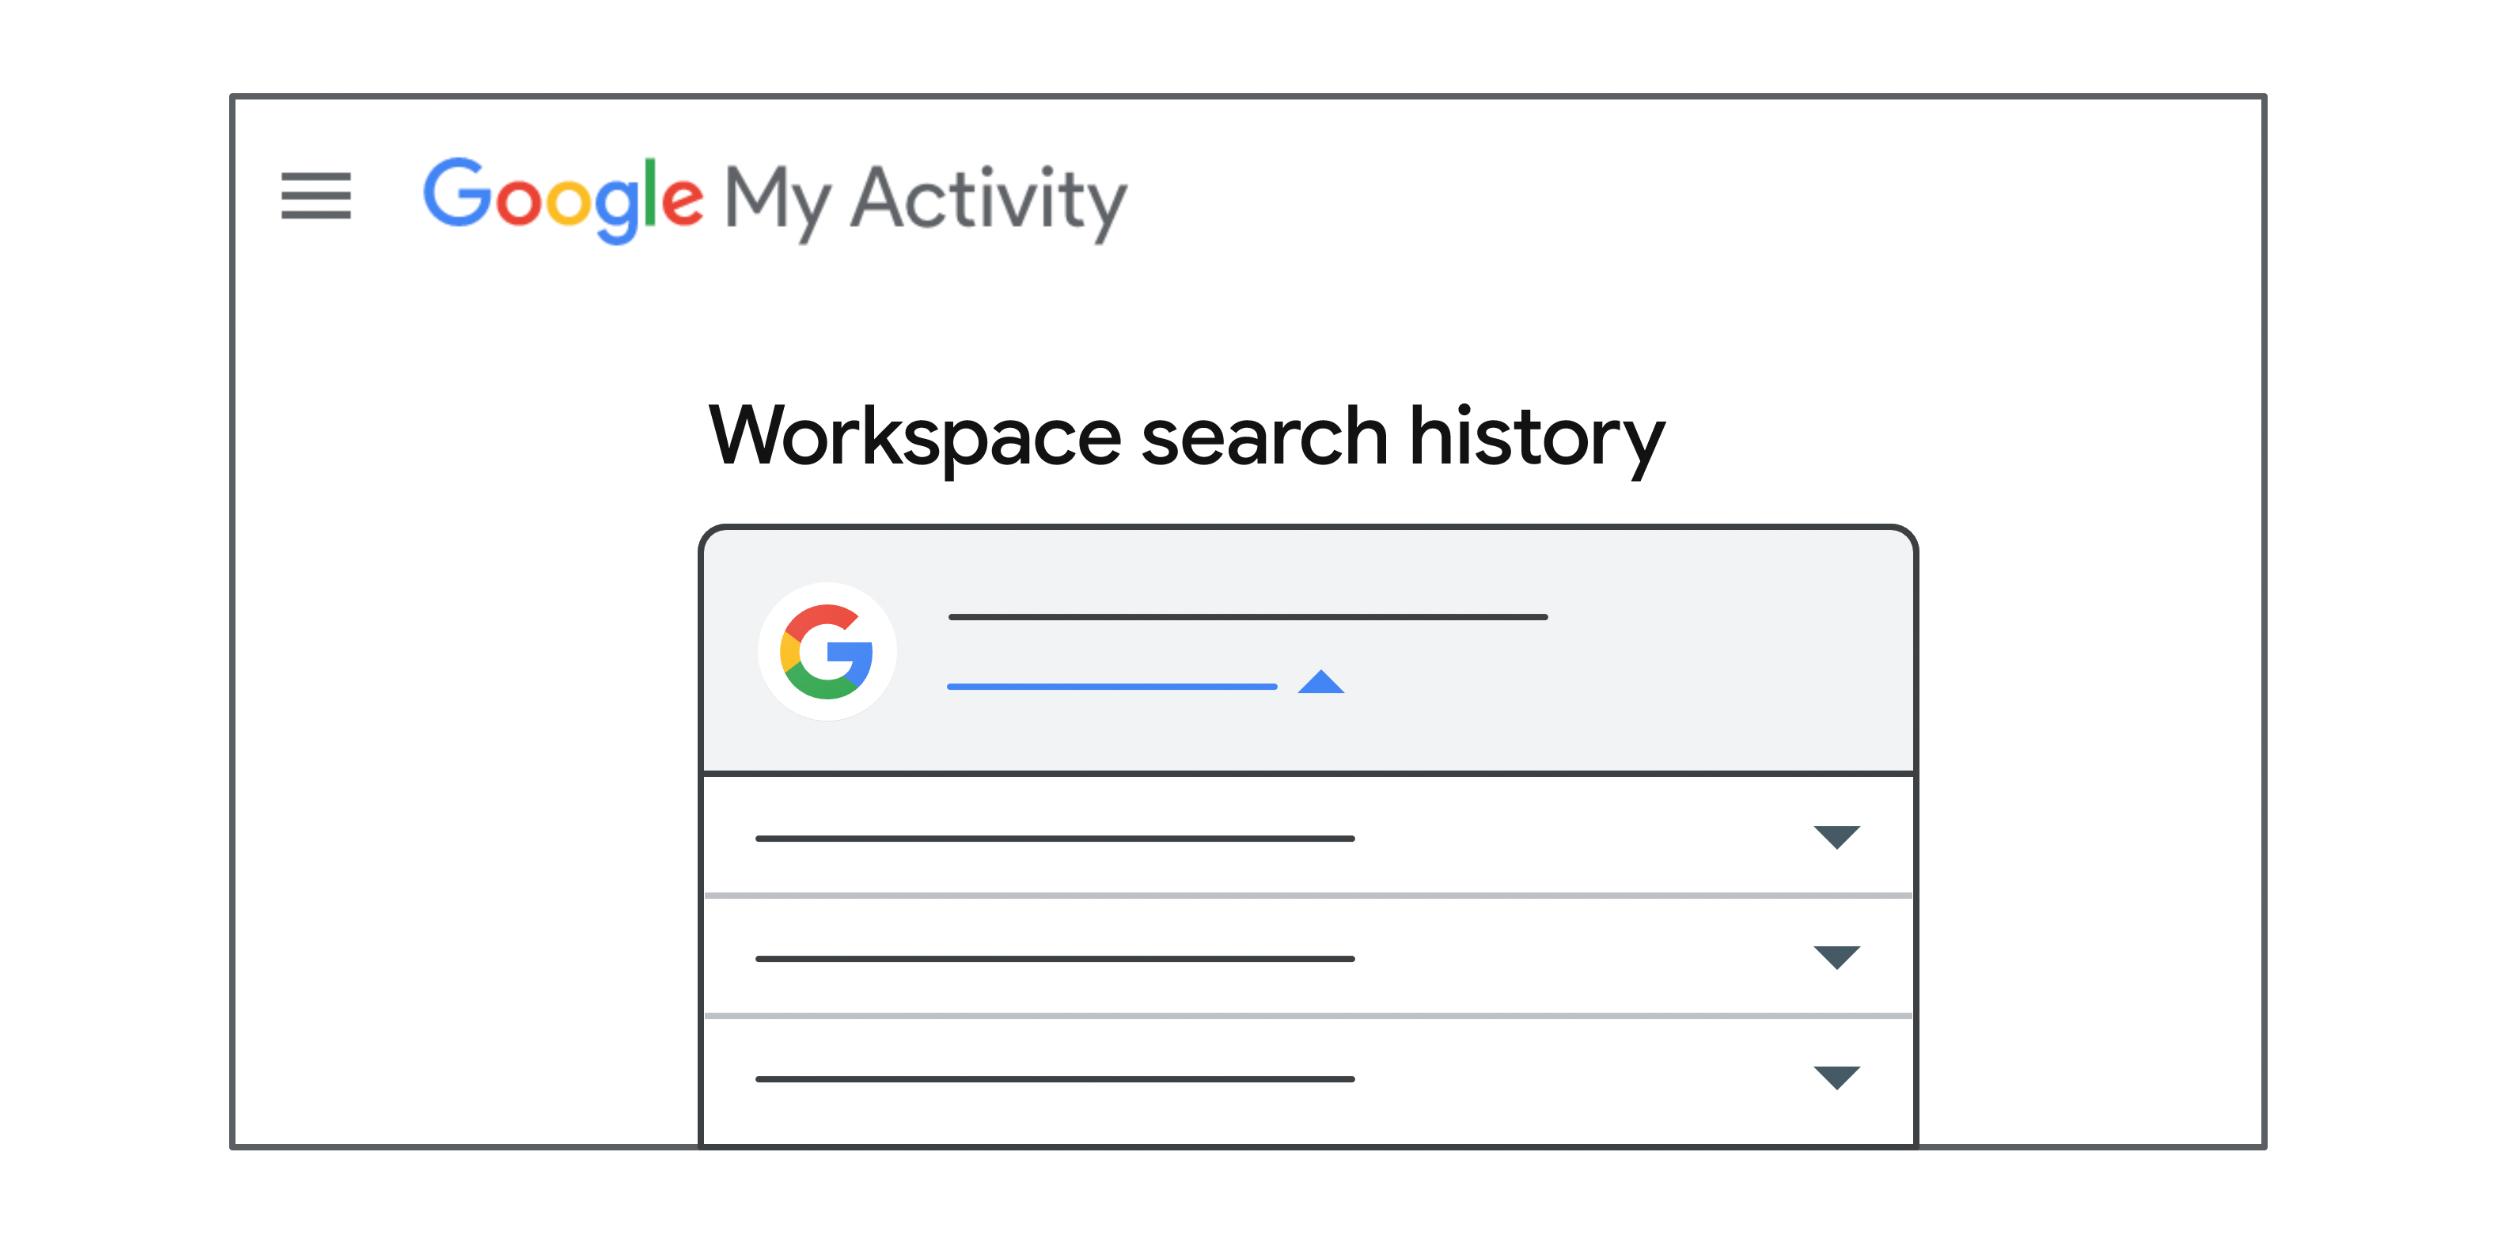 cronologia delle ricerche di Google Workspace